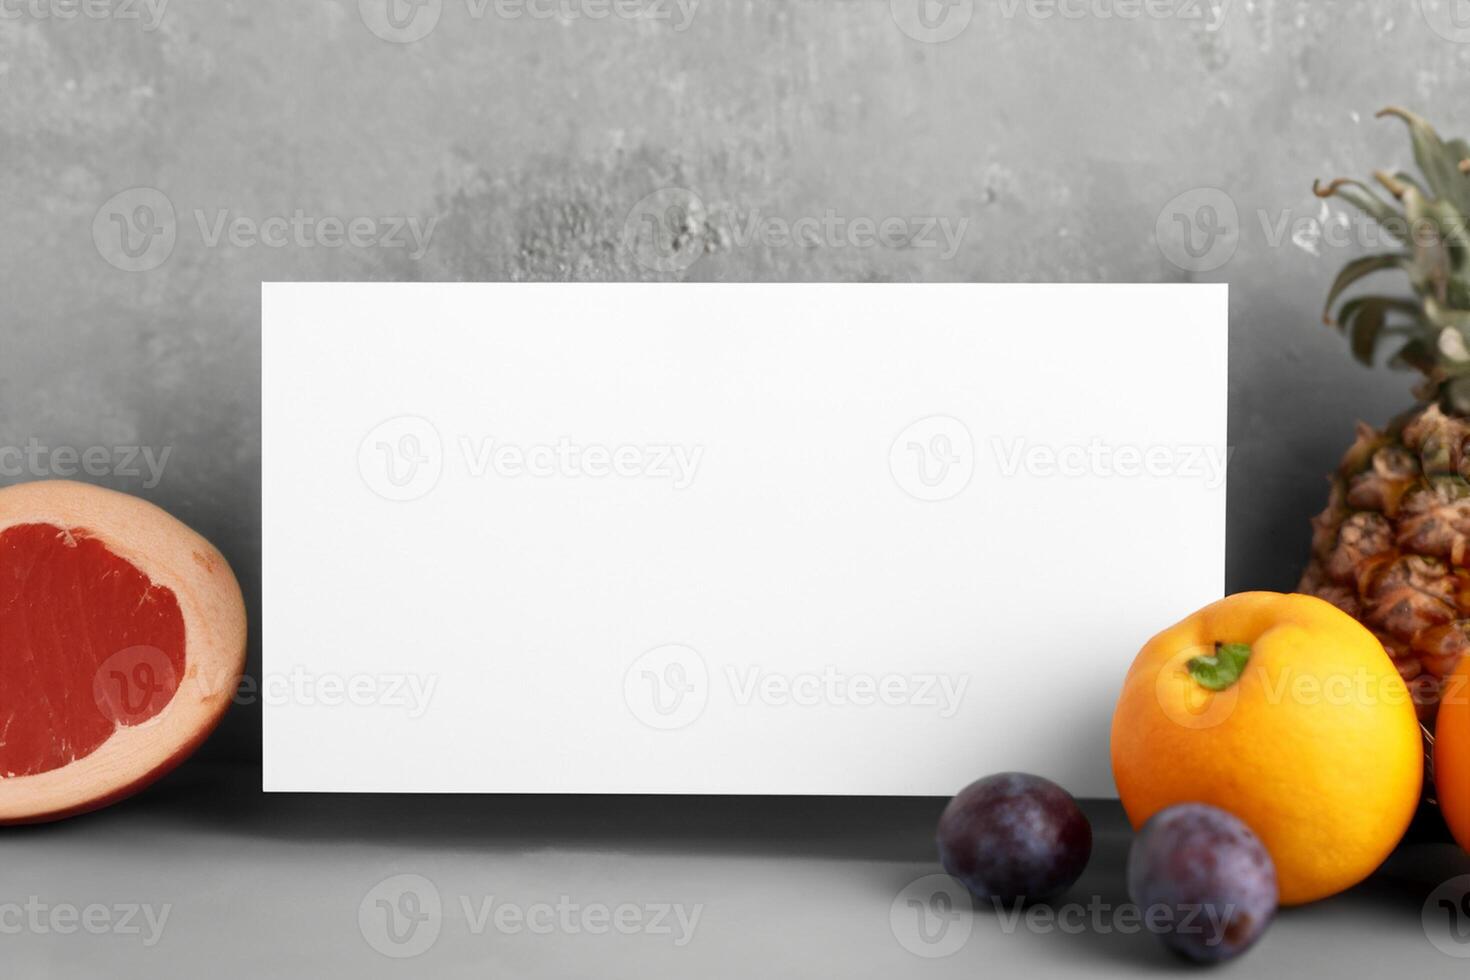 cartão e branco papel brincar harmonizado com fresco fruta, construindo uma visual sinfonia do astuto Projeto e culinária prazer, Onde saudável ingredientes fundir dentro uma festa do vibrante imagens foto